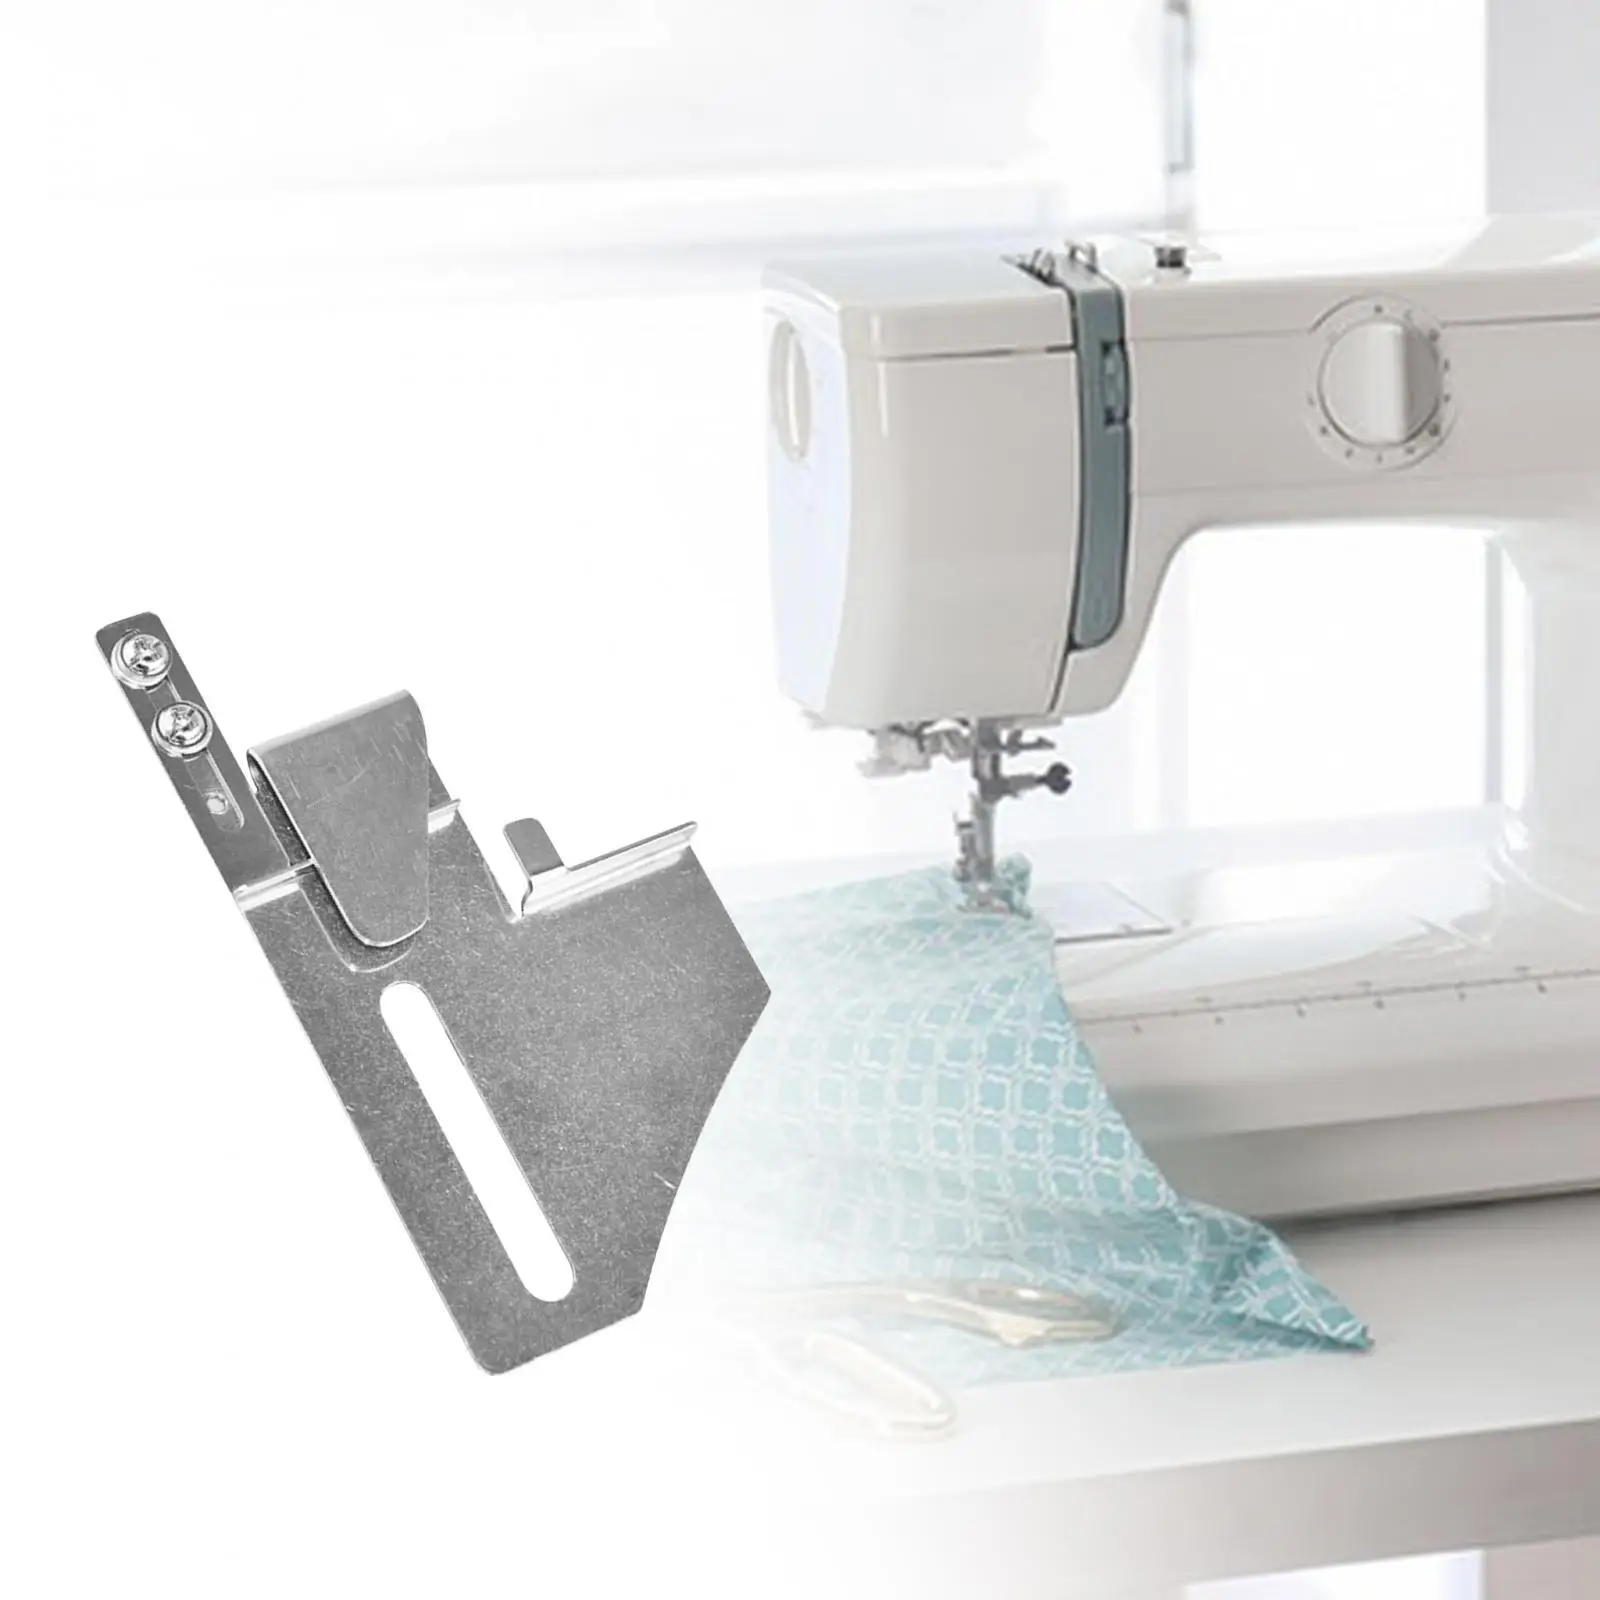 Lap Seam Folder Binder Folder Sewing Machine Presser Foot Patchwork Presser Foot for Decorative Stitching Industrial Lockstich